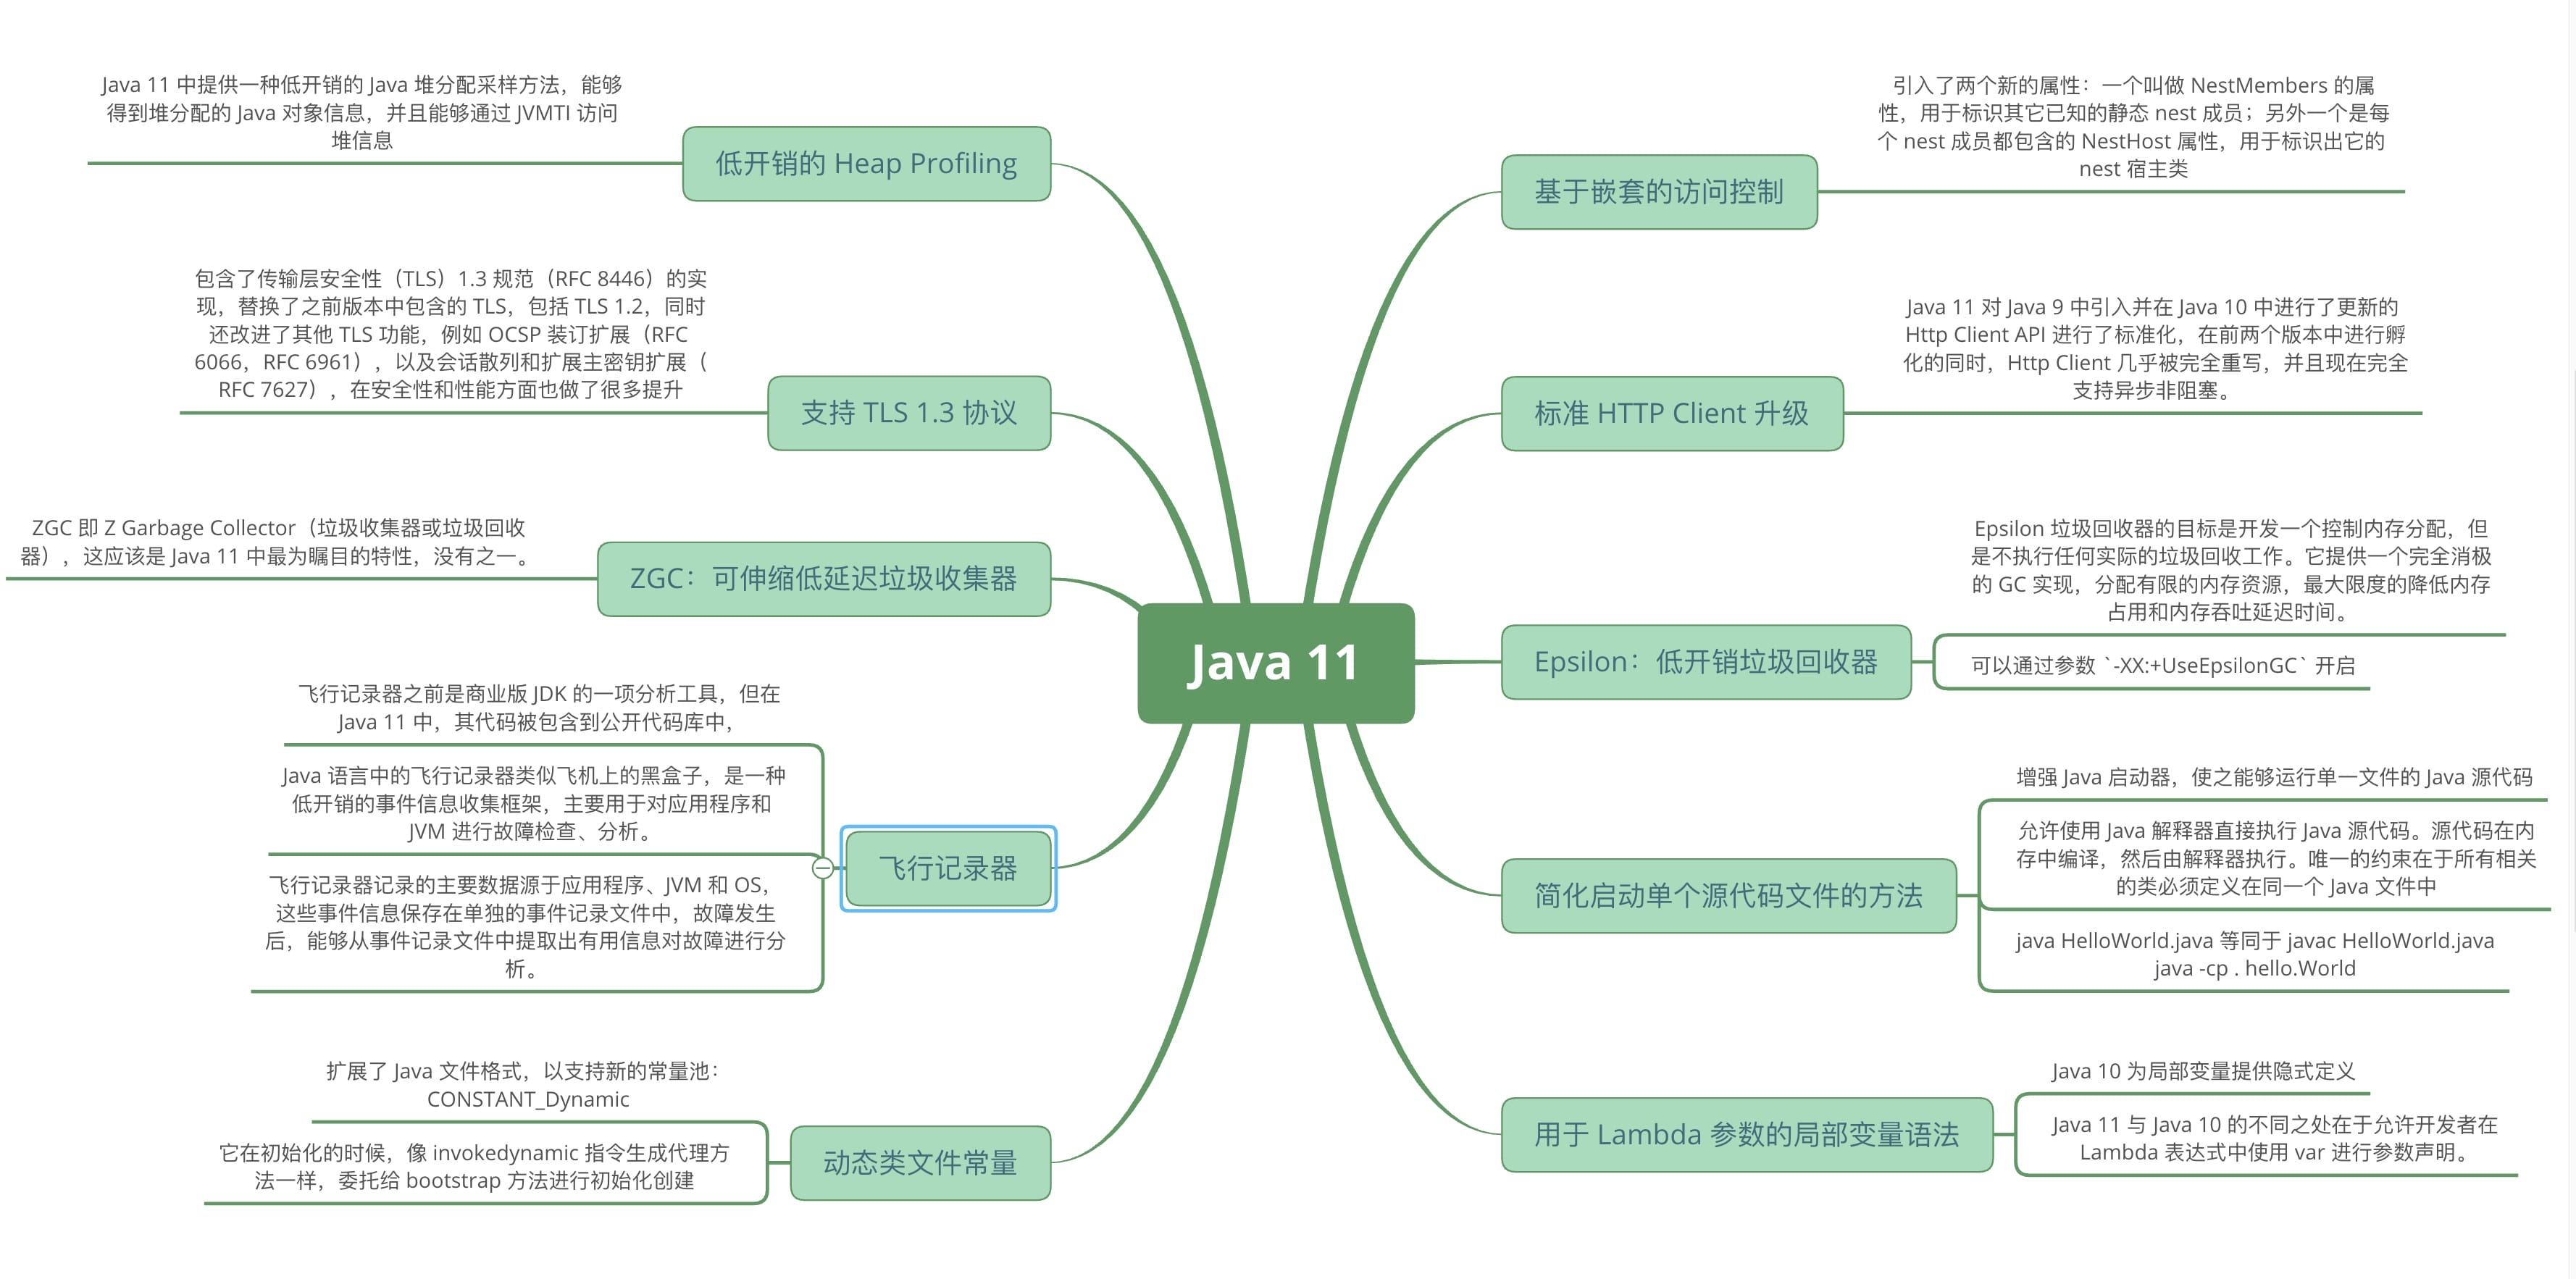 Java 11 新特性概述_Java8 以上特性概述